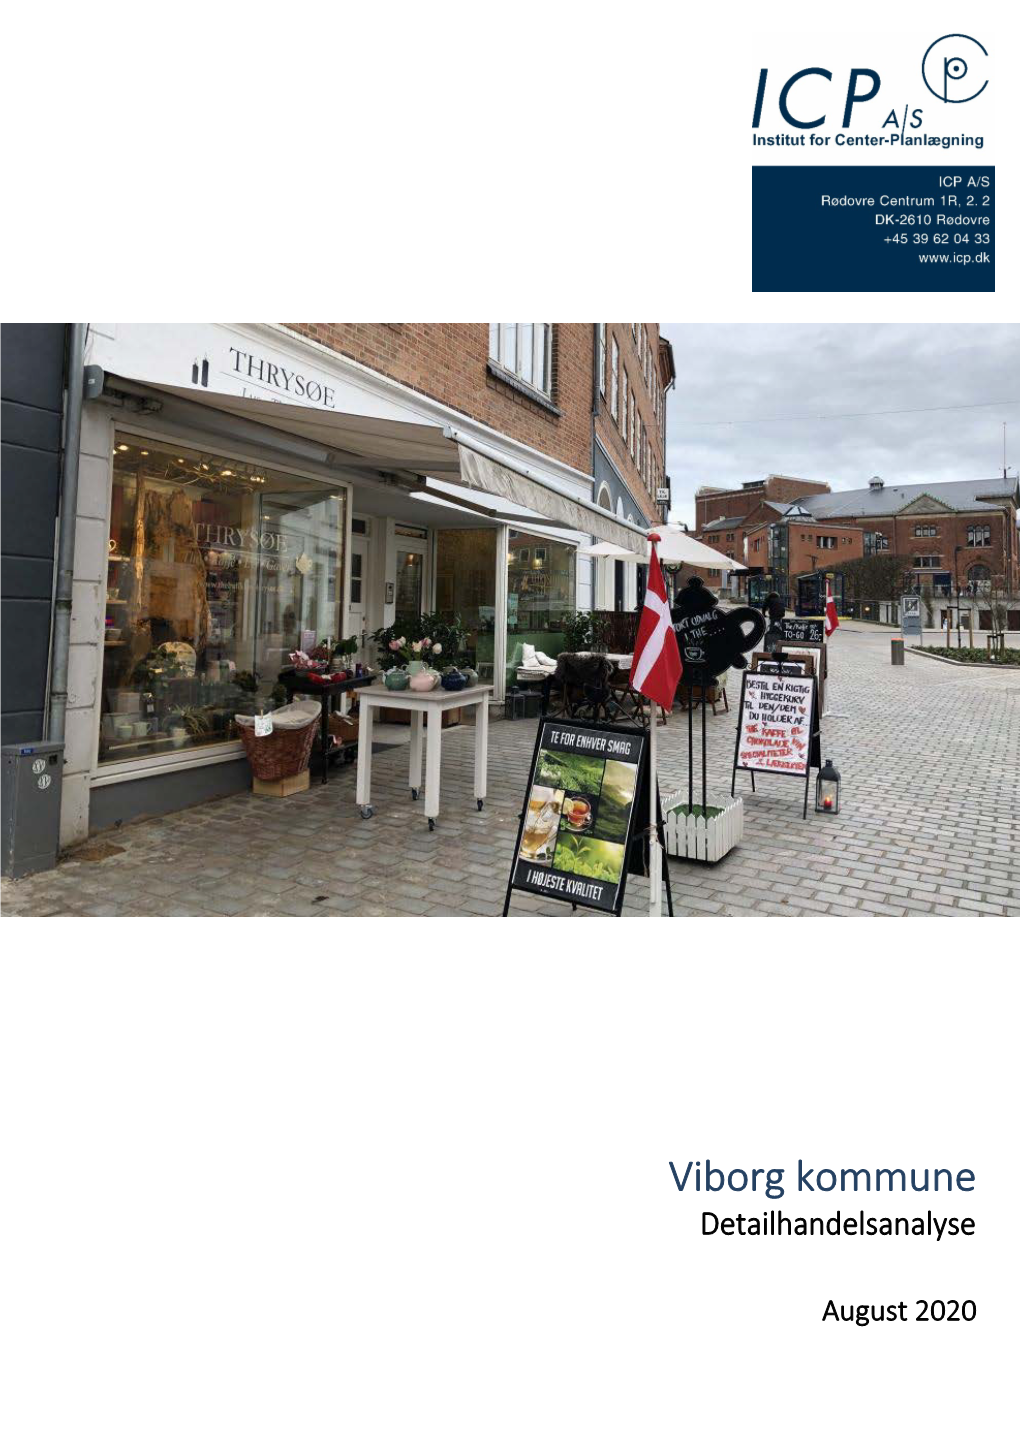 Detailhandelsanalyse for Viborg Kommune